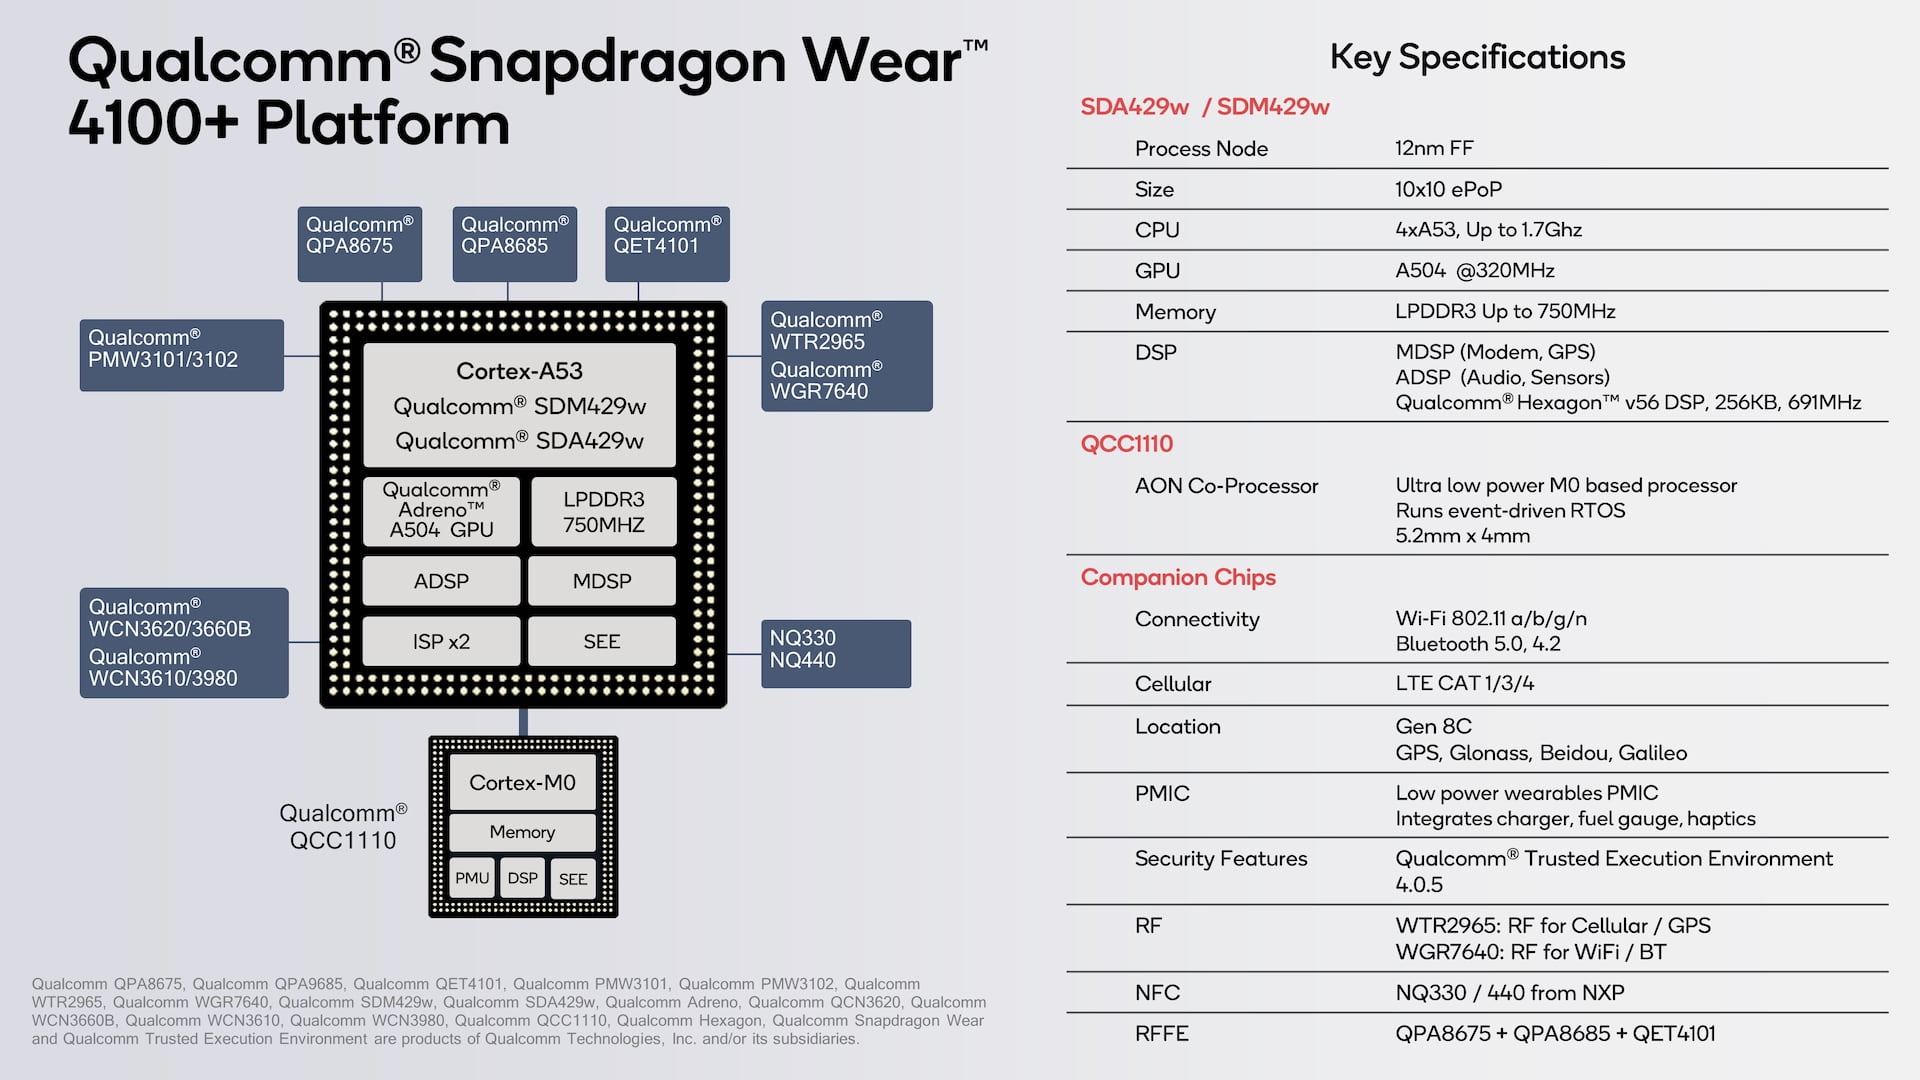 12. Qualcomm Snapdragon Wear 410